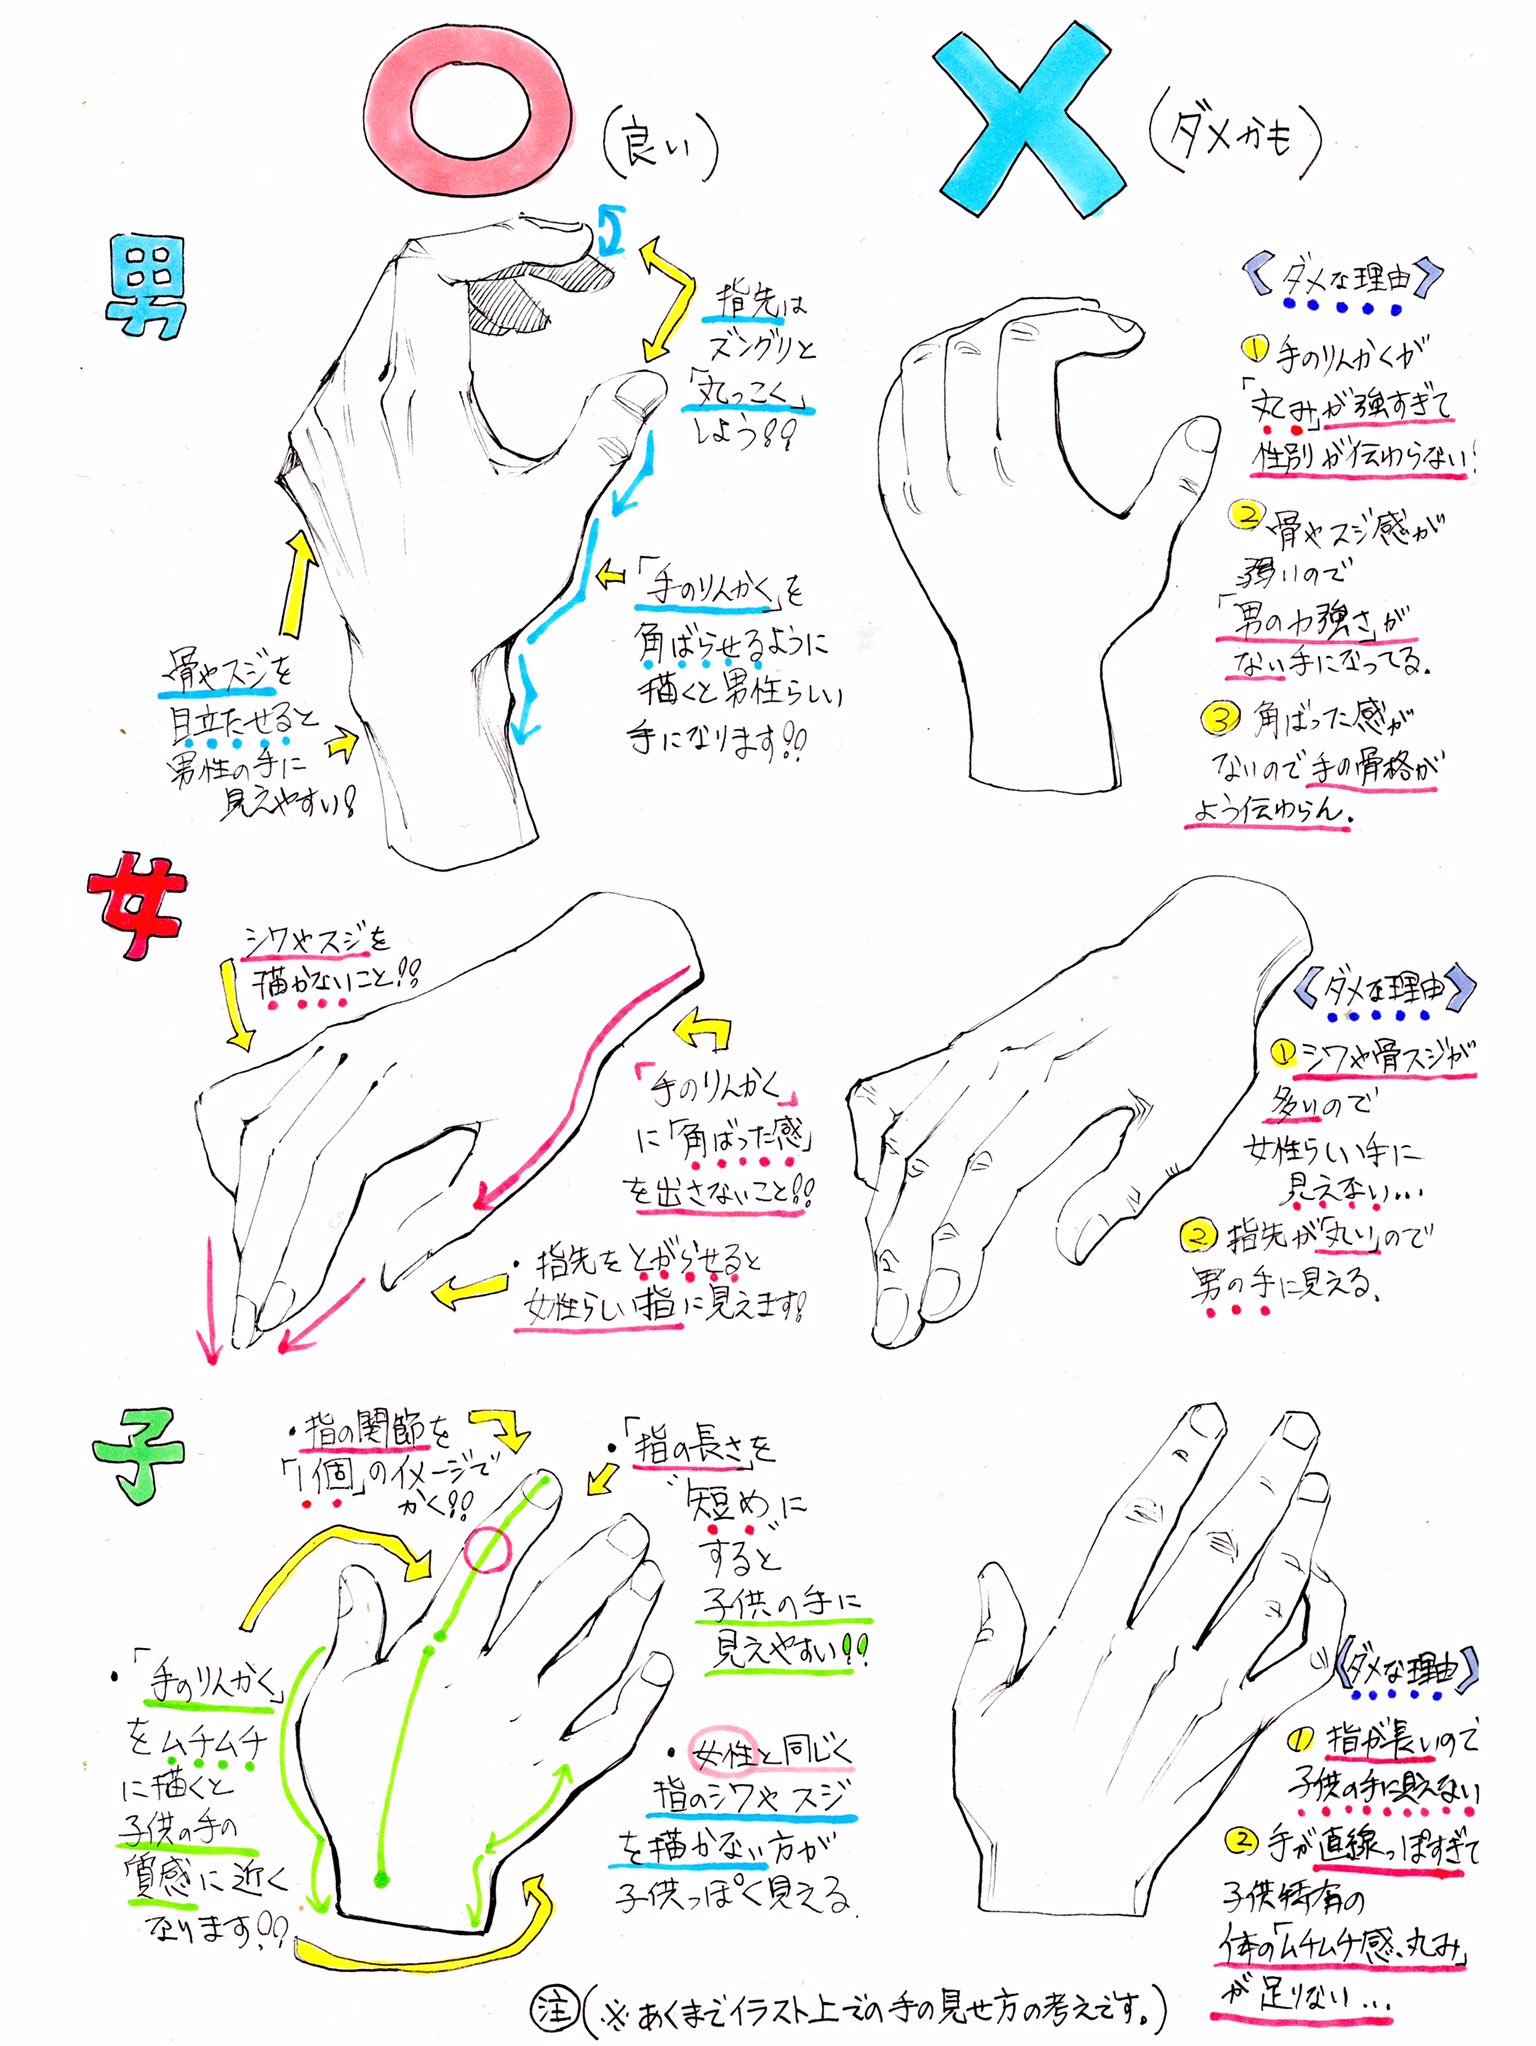 吉村拓也 イラスト講座 男性の手 女性の手 子どもの手 を描くときの 良いこと と ダメなこと T Co 6jbwokpvjb Twitter